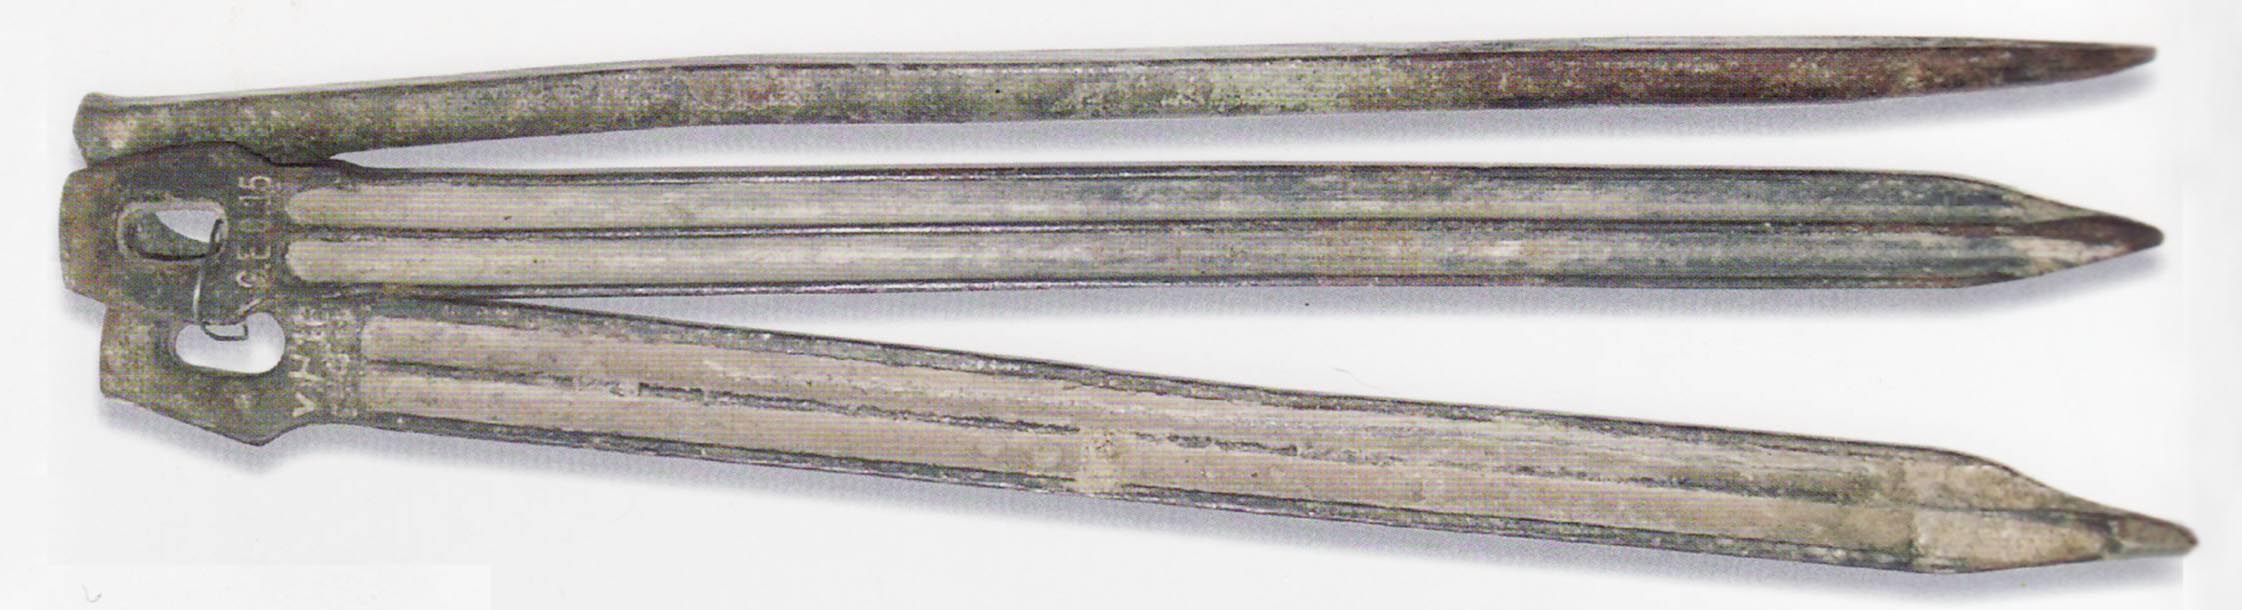 1-steel-econ-pegs